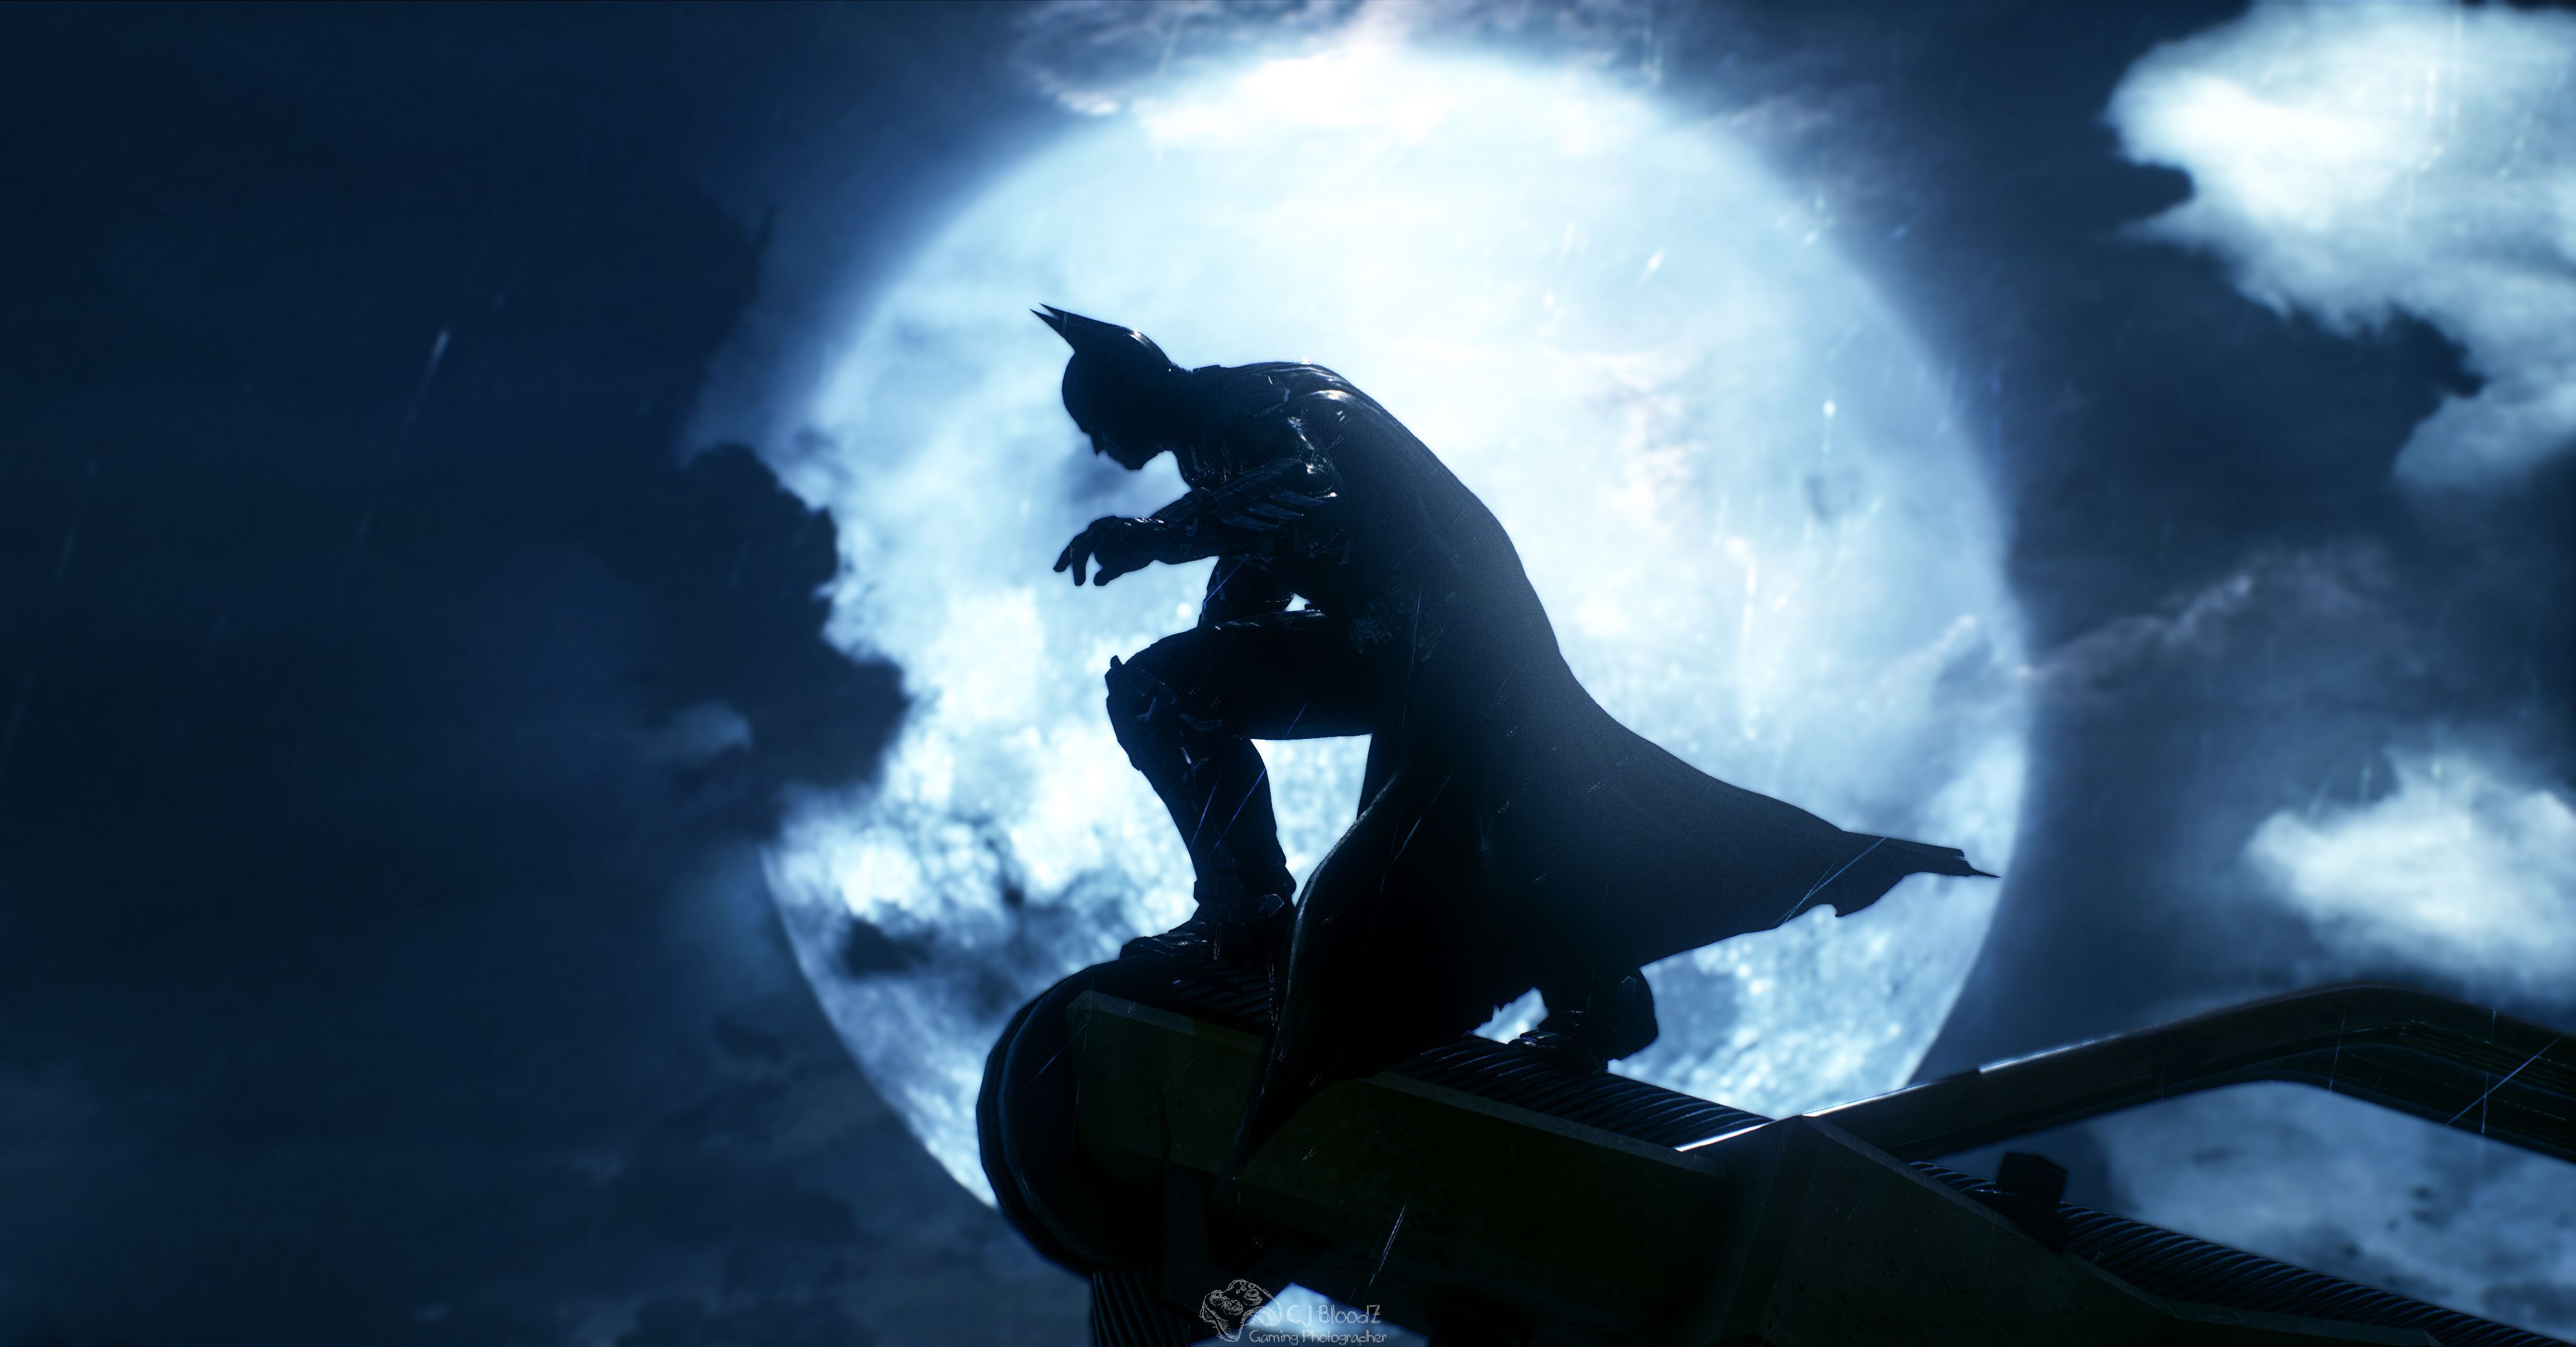 Скачать обои бесплатно Видеоигры, Бэтмен, Комиксы Dc, Batman: Рыцарь Аркхема картинка на рабочий стол ПК